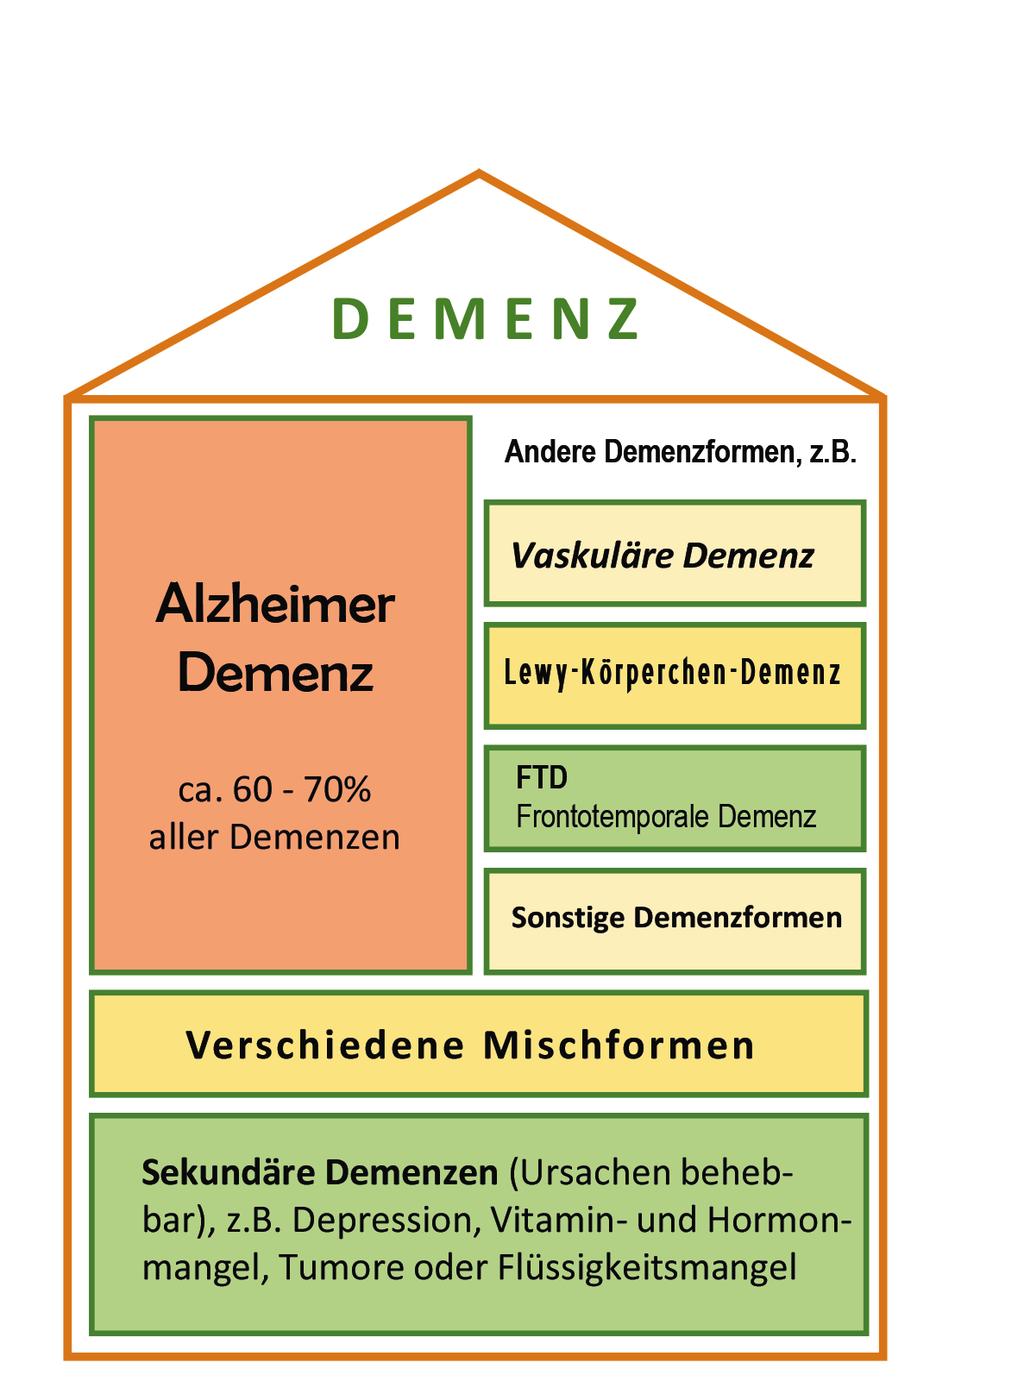 Nein, aber es hat viel miteinander zu tun: Demenz ist der Oberbegriff für eine Vielzahl unter - schiedlicher hirnorganischer Leistungs- und Funk - tions störungen, von denen die Alzheimer Demenz mit